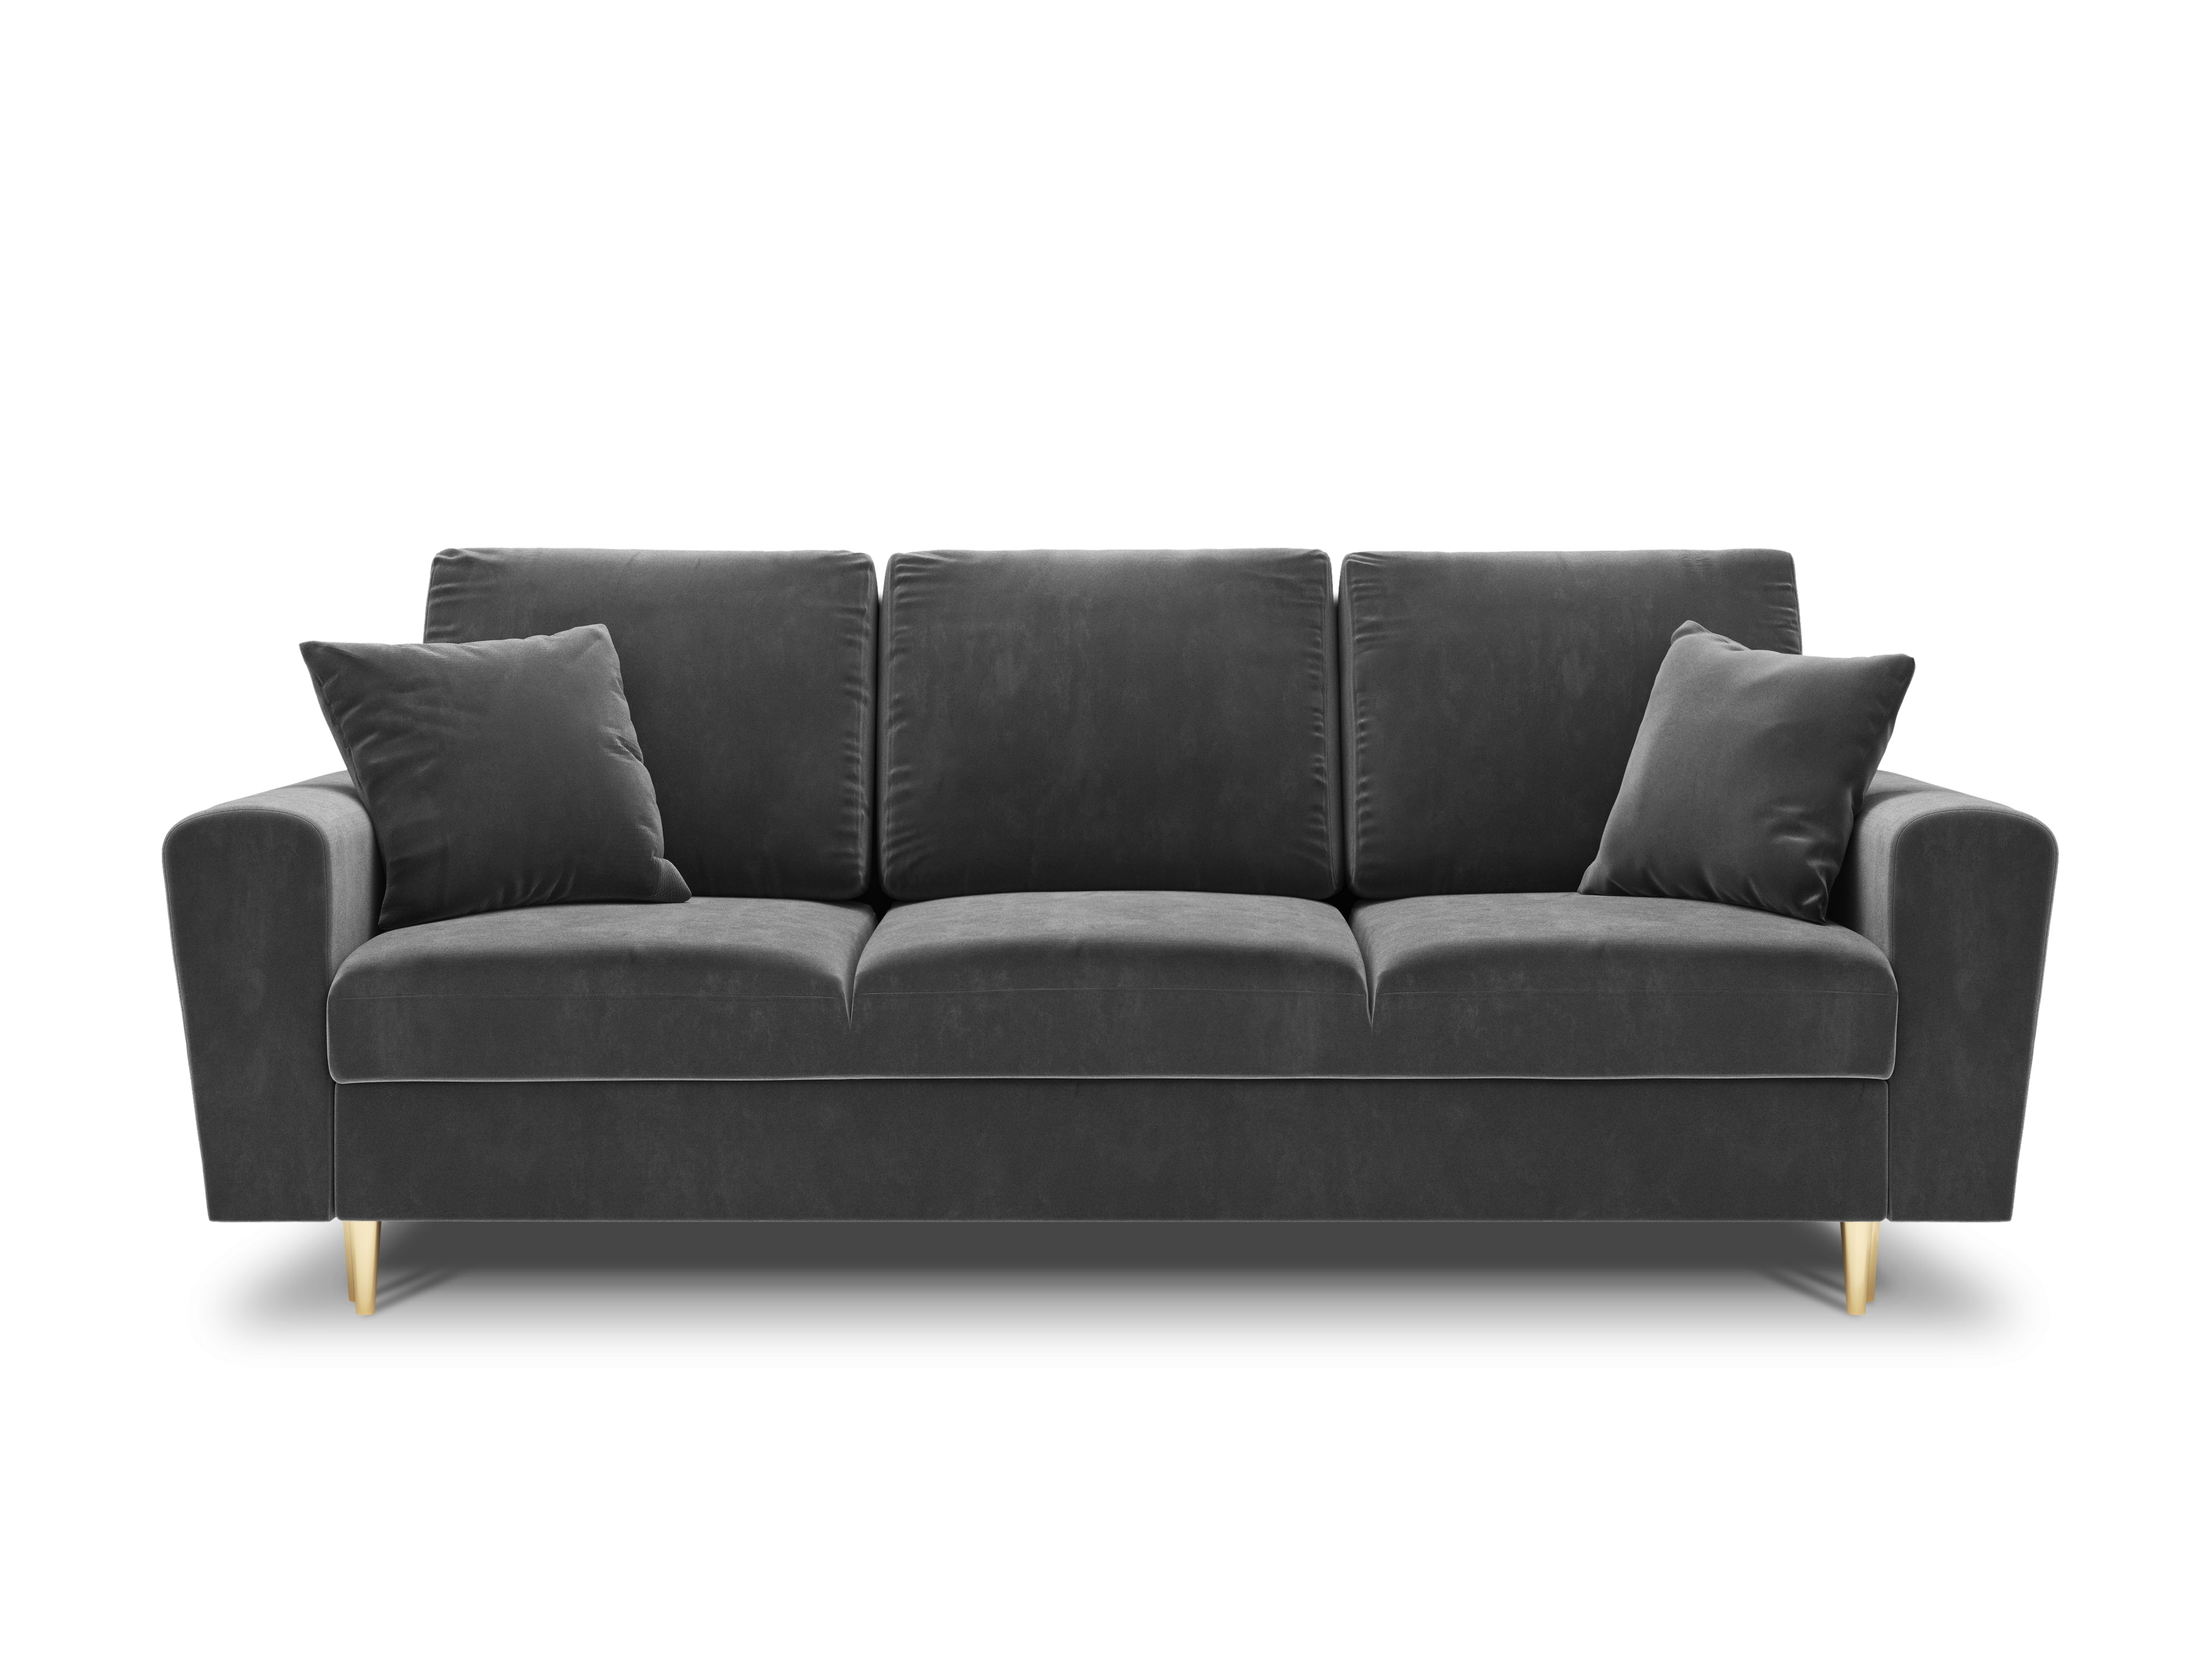 light gray 3-person sofa